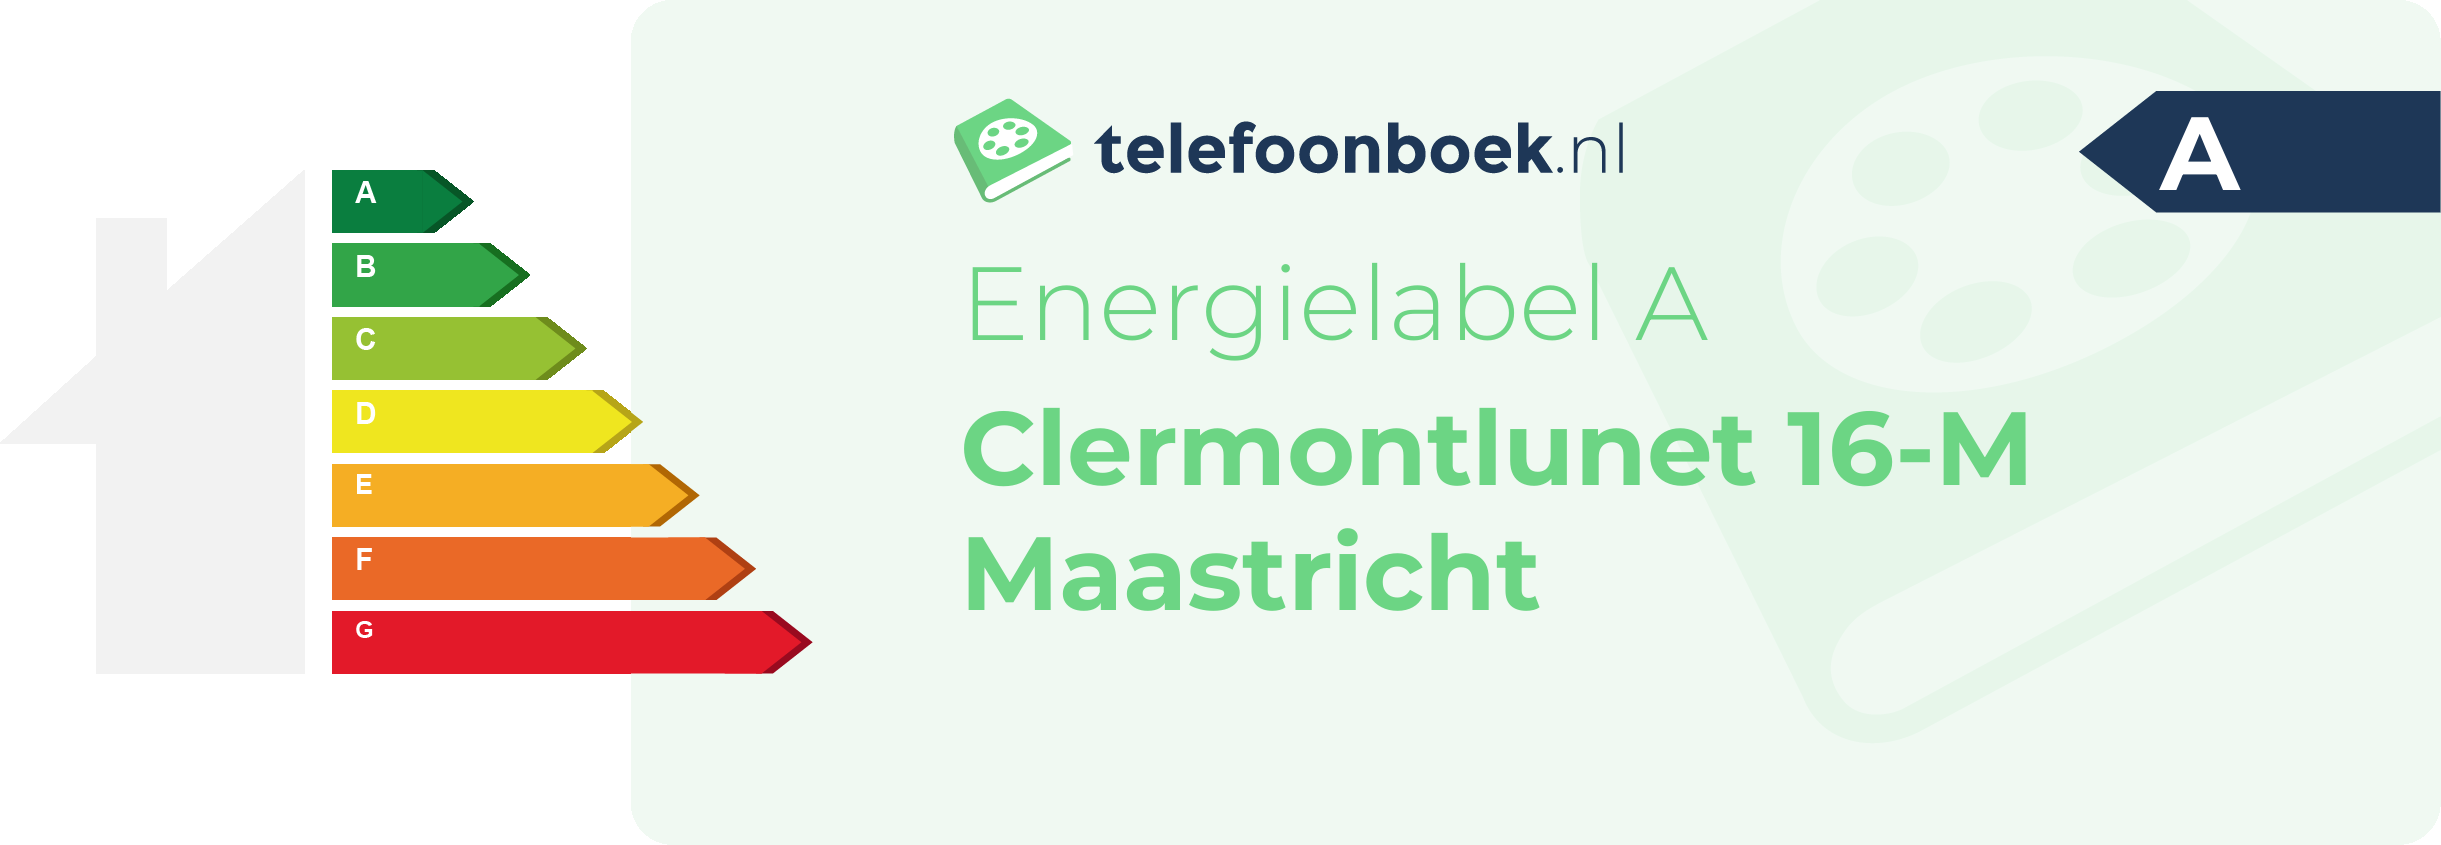 Energielabel Clermontlunet 16-M Maastricht